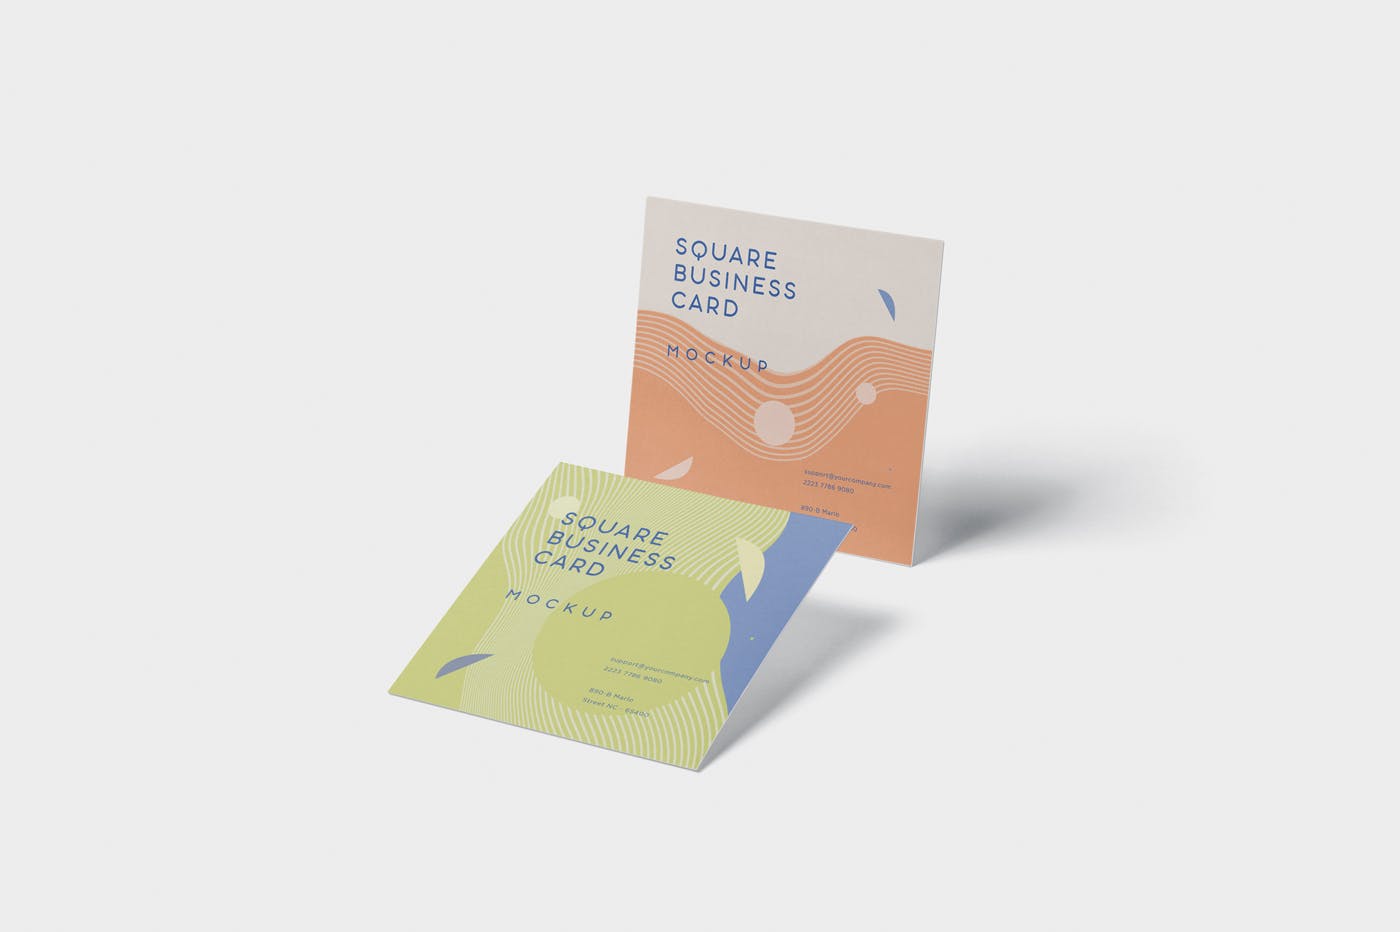 正方形创意企业名片设计阴影效果图样机 Business Card Mockup in Square Format插图(3)